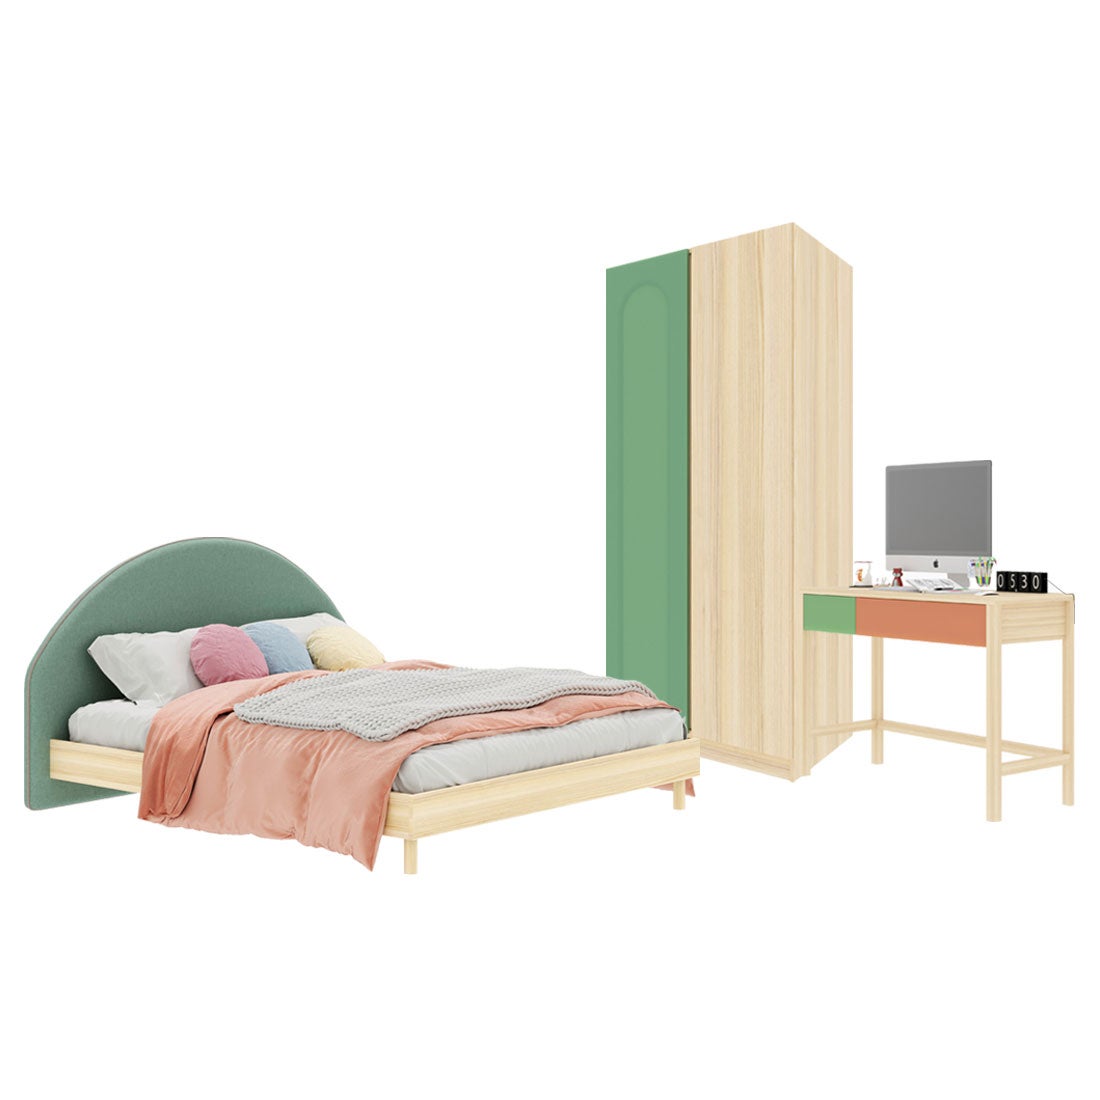 ชุดห้องนอน ขนาด 5 ฟุต-เบาะเขียว รุ่น Bingsoo & ตู้เสื้อผ้า 90 ซม. สีเขียว01